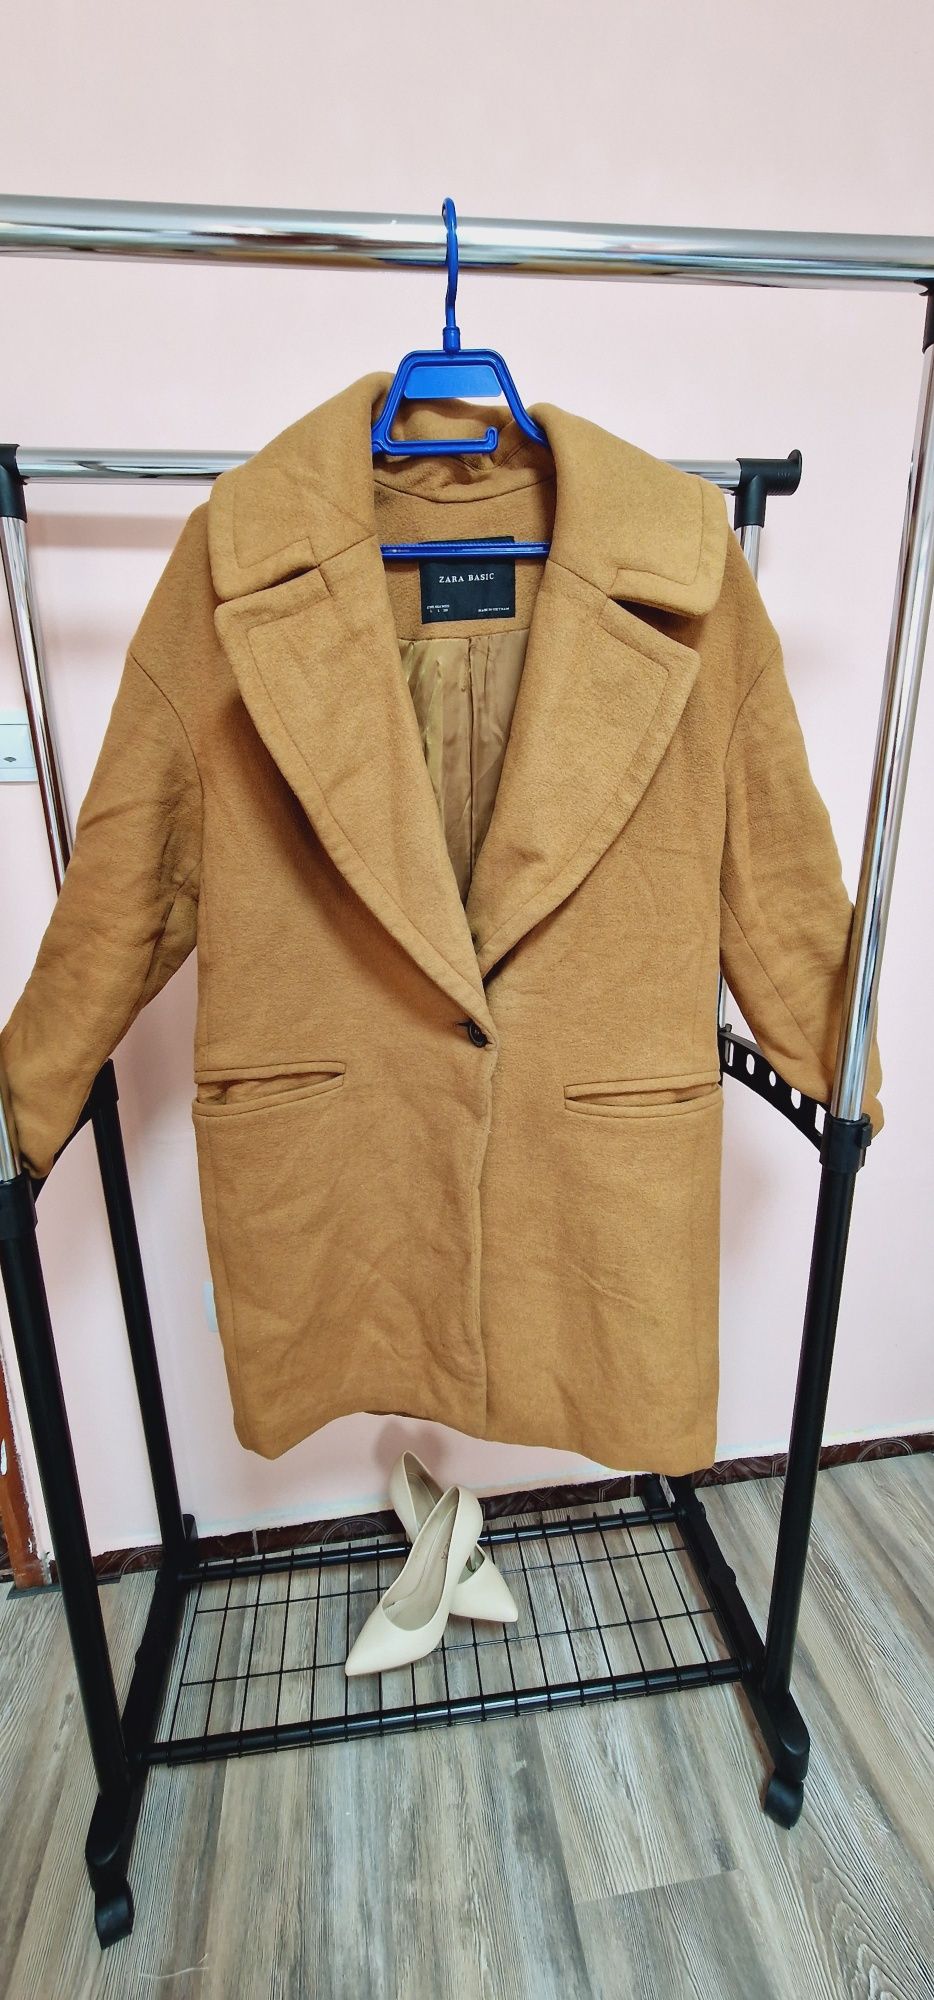 Пролетно палто Zara, Л размер